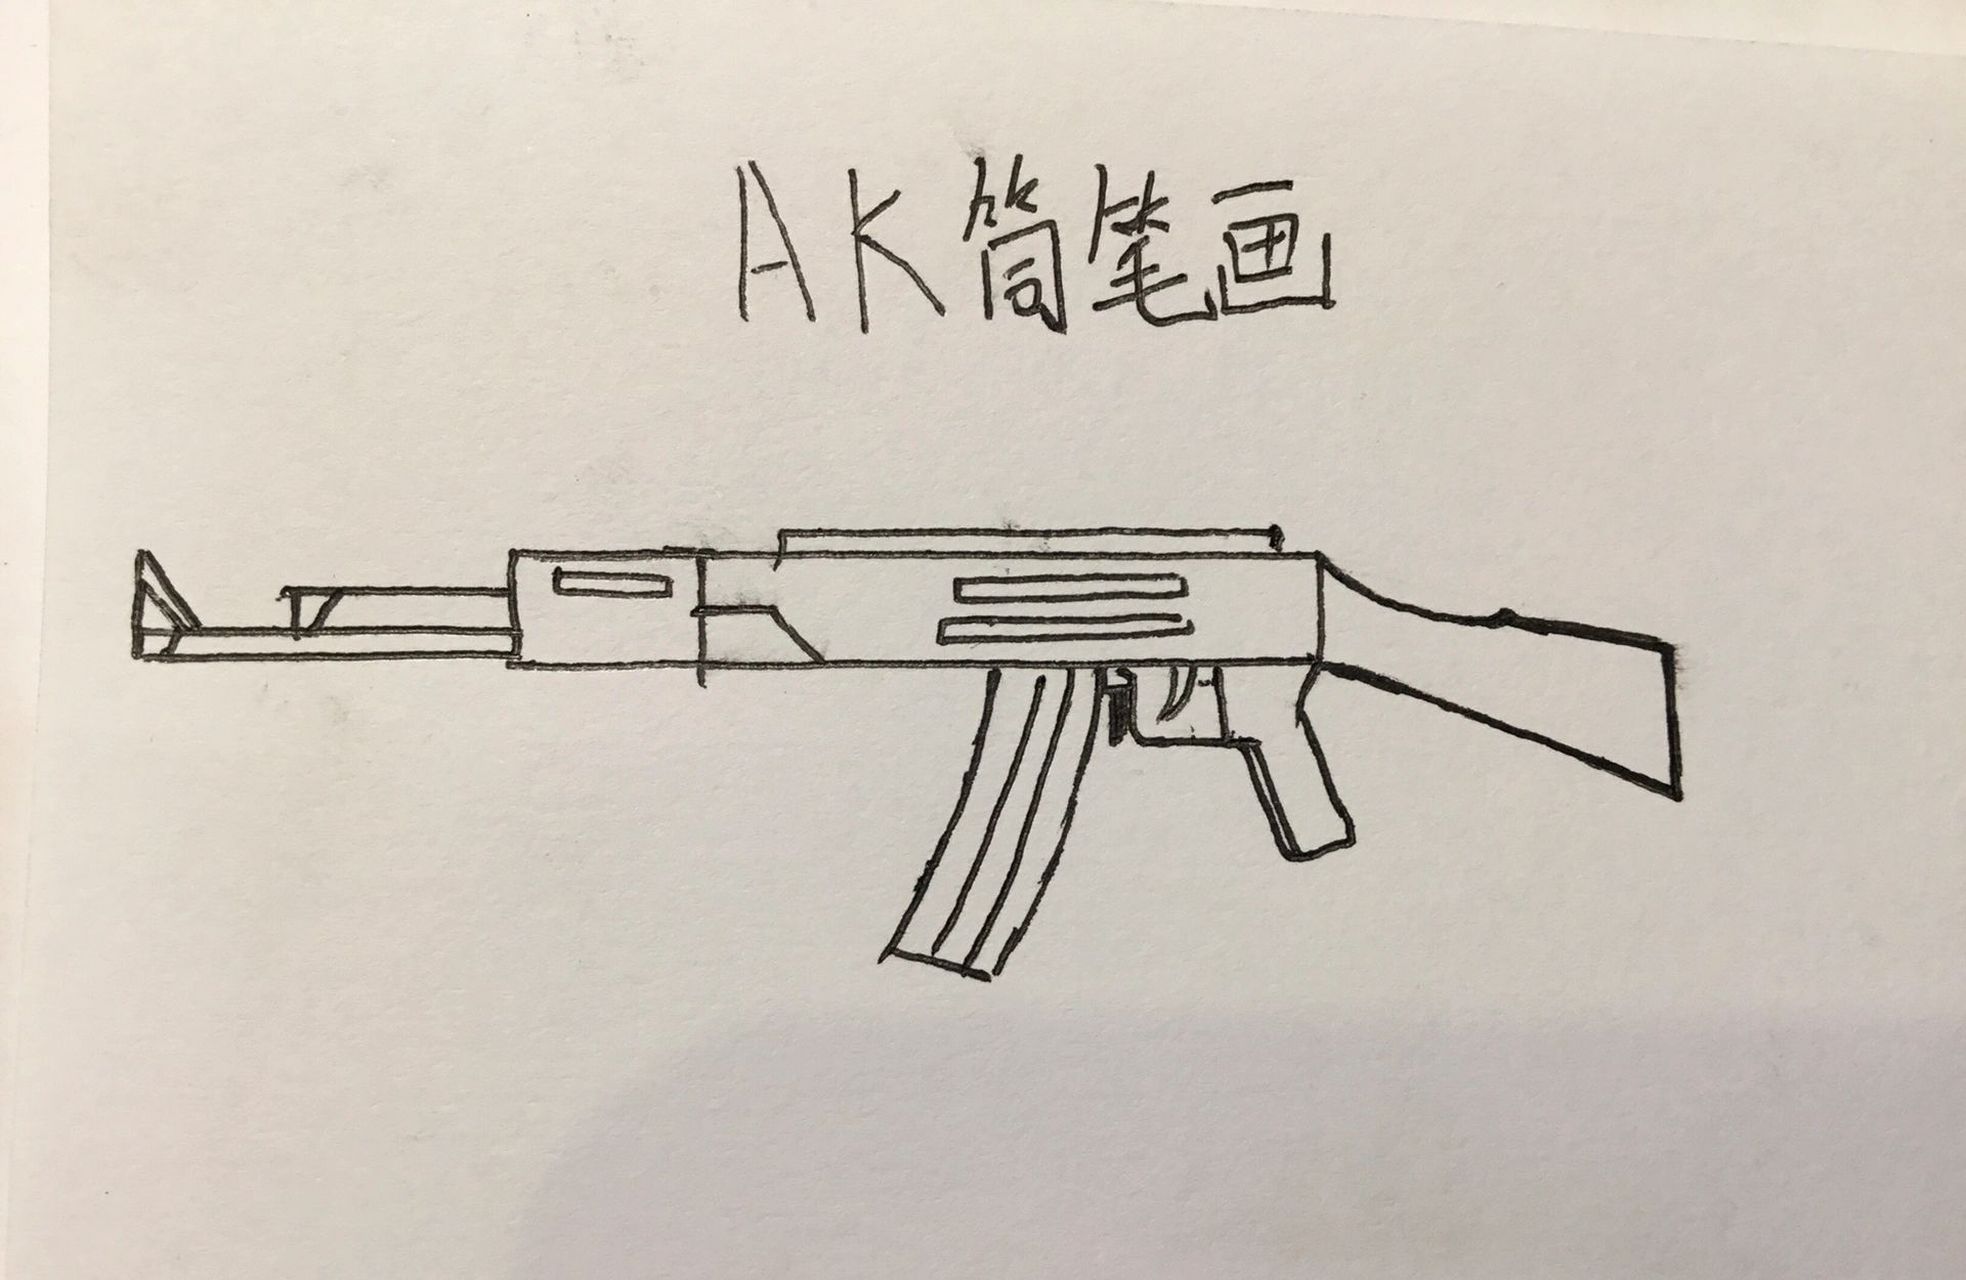 AK简笔画 简单图片